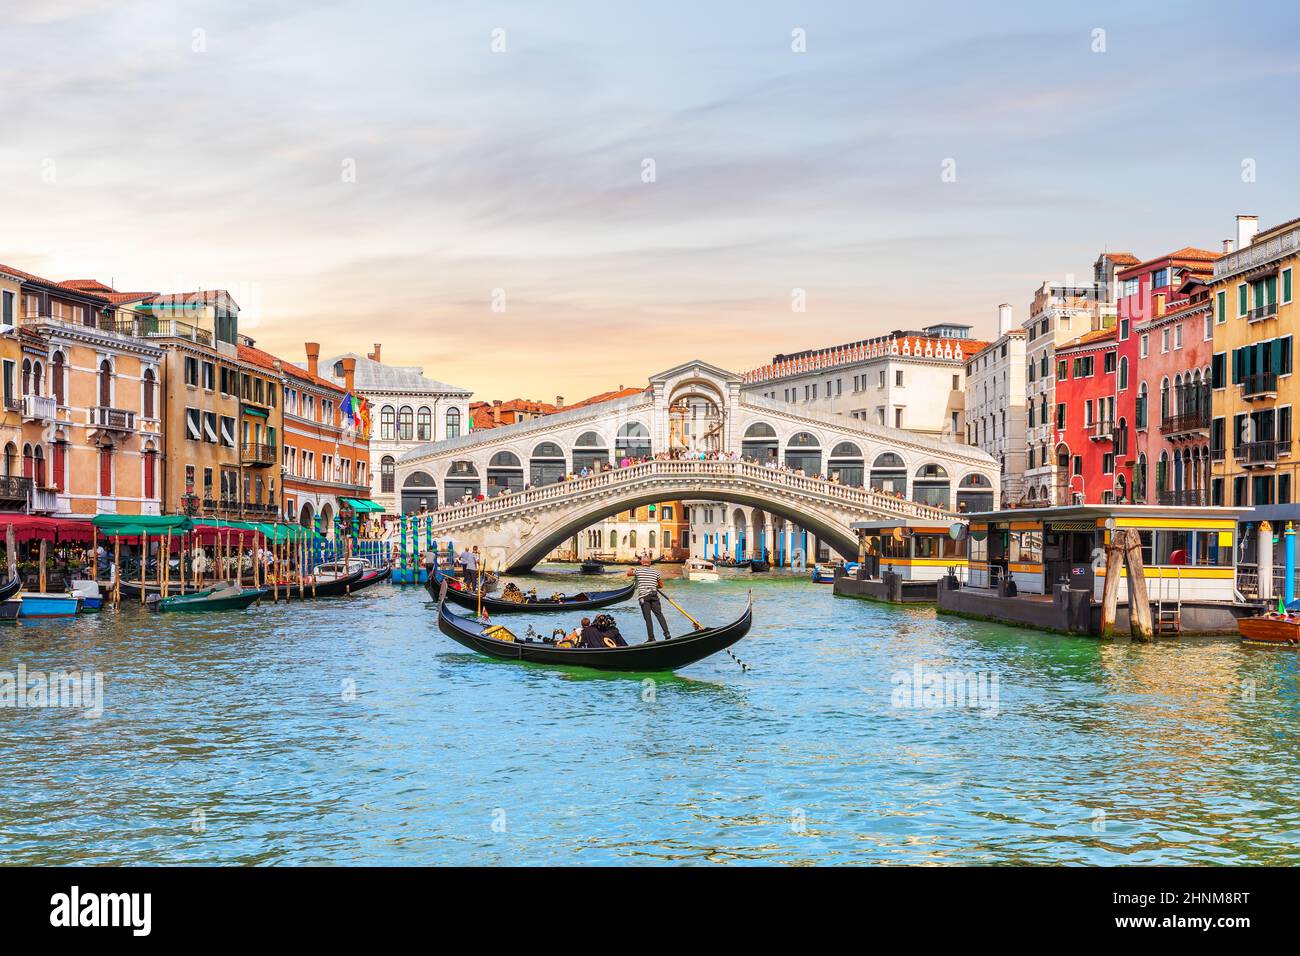 Rialto Bridge and gondoliers, a popular landmark of Venice, Italy Stock Photo